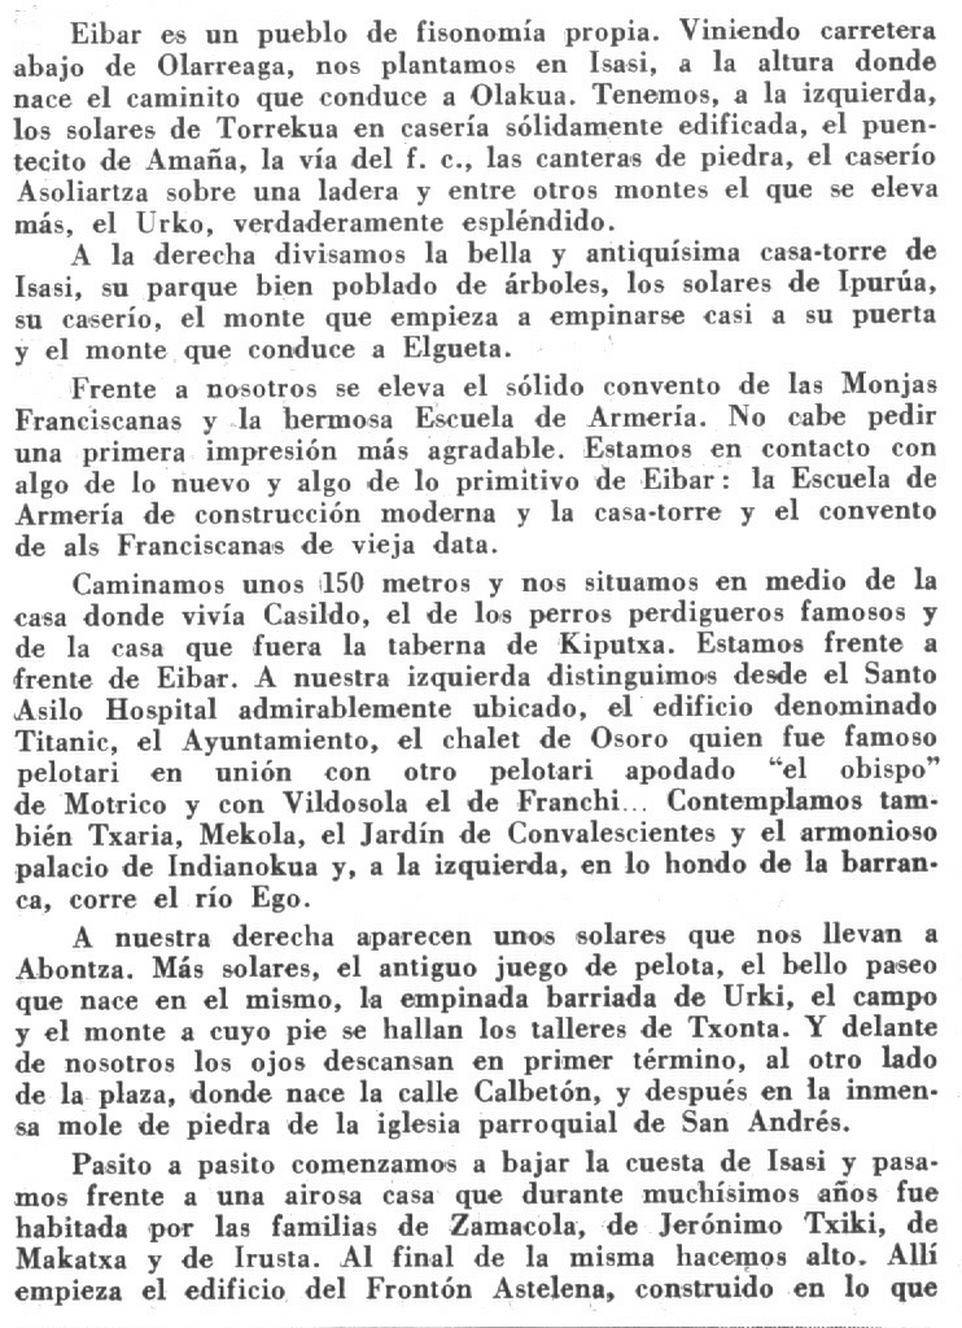 Eibar (Euzko Deya aldizkarian, 1945)